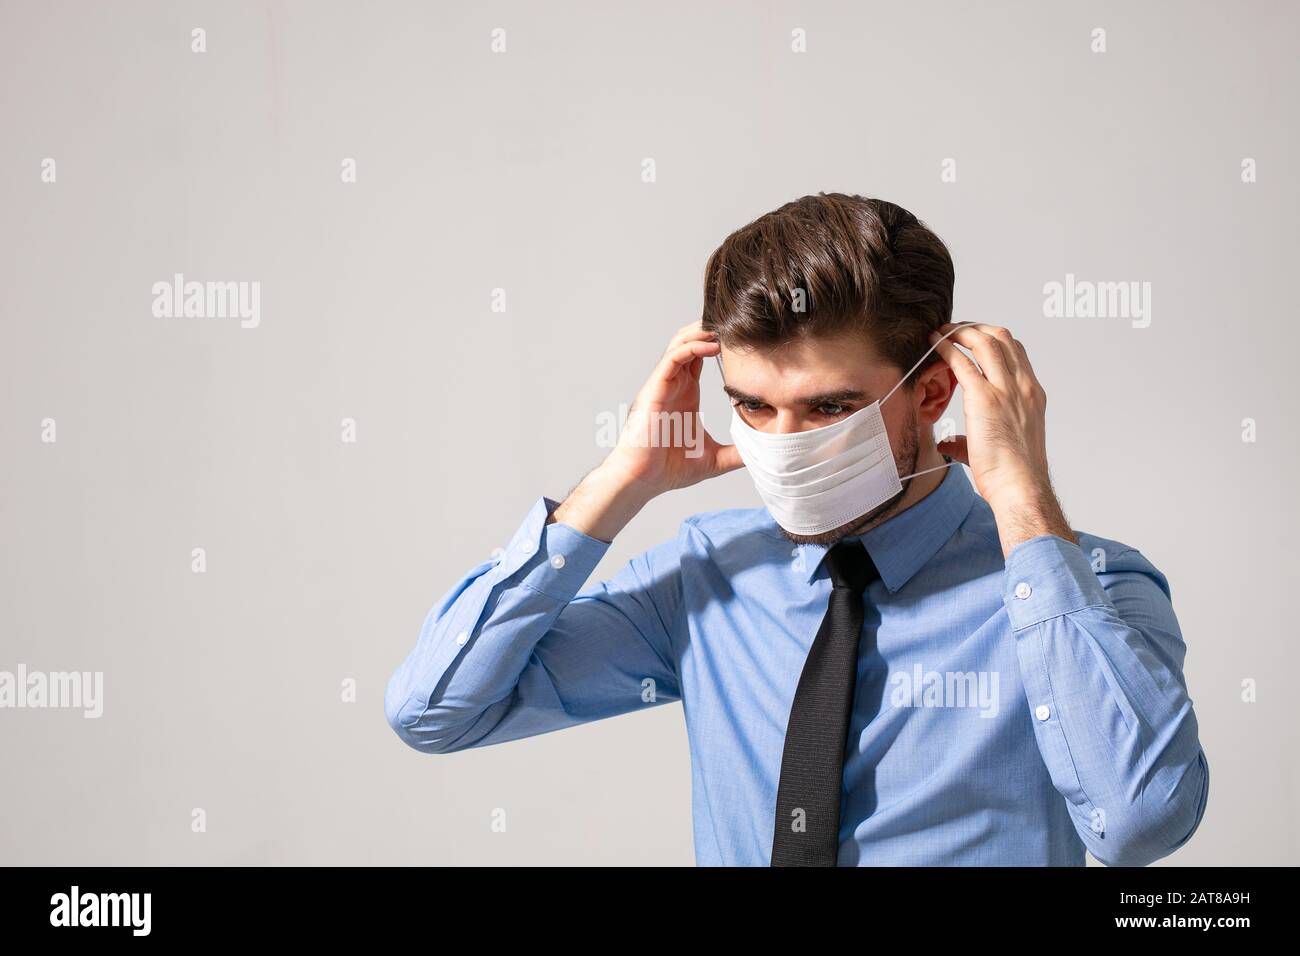 Ist Zeit zum Schutz der ganzen Zeit: Eleganter Mann, der einen Mundschutz trägt, um zu verhindern, dass er bei der Arbeit oder auf dem Weg zur Arbeit krank wird Stockfoto